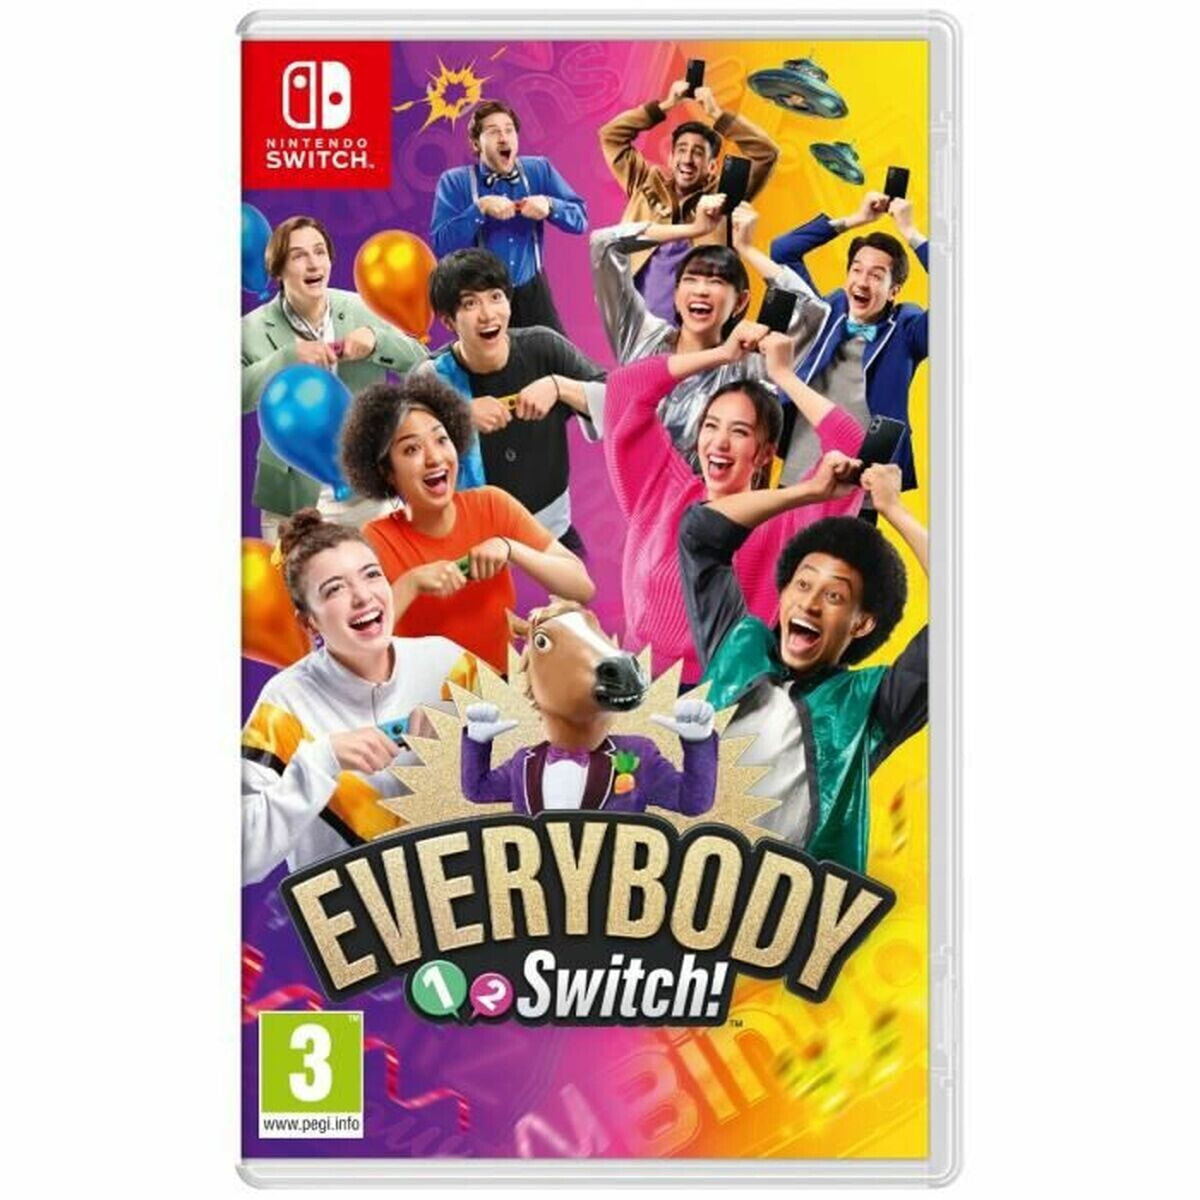 Видеоигра для Switch Nintendo Everybody 1-2 Switch!